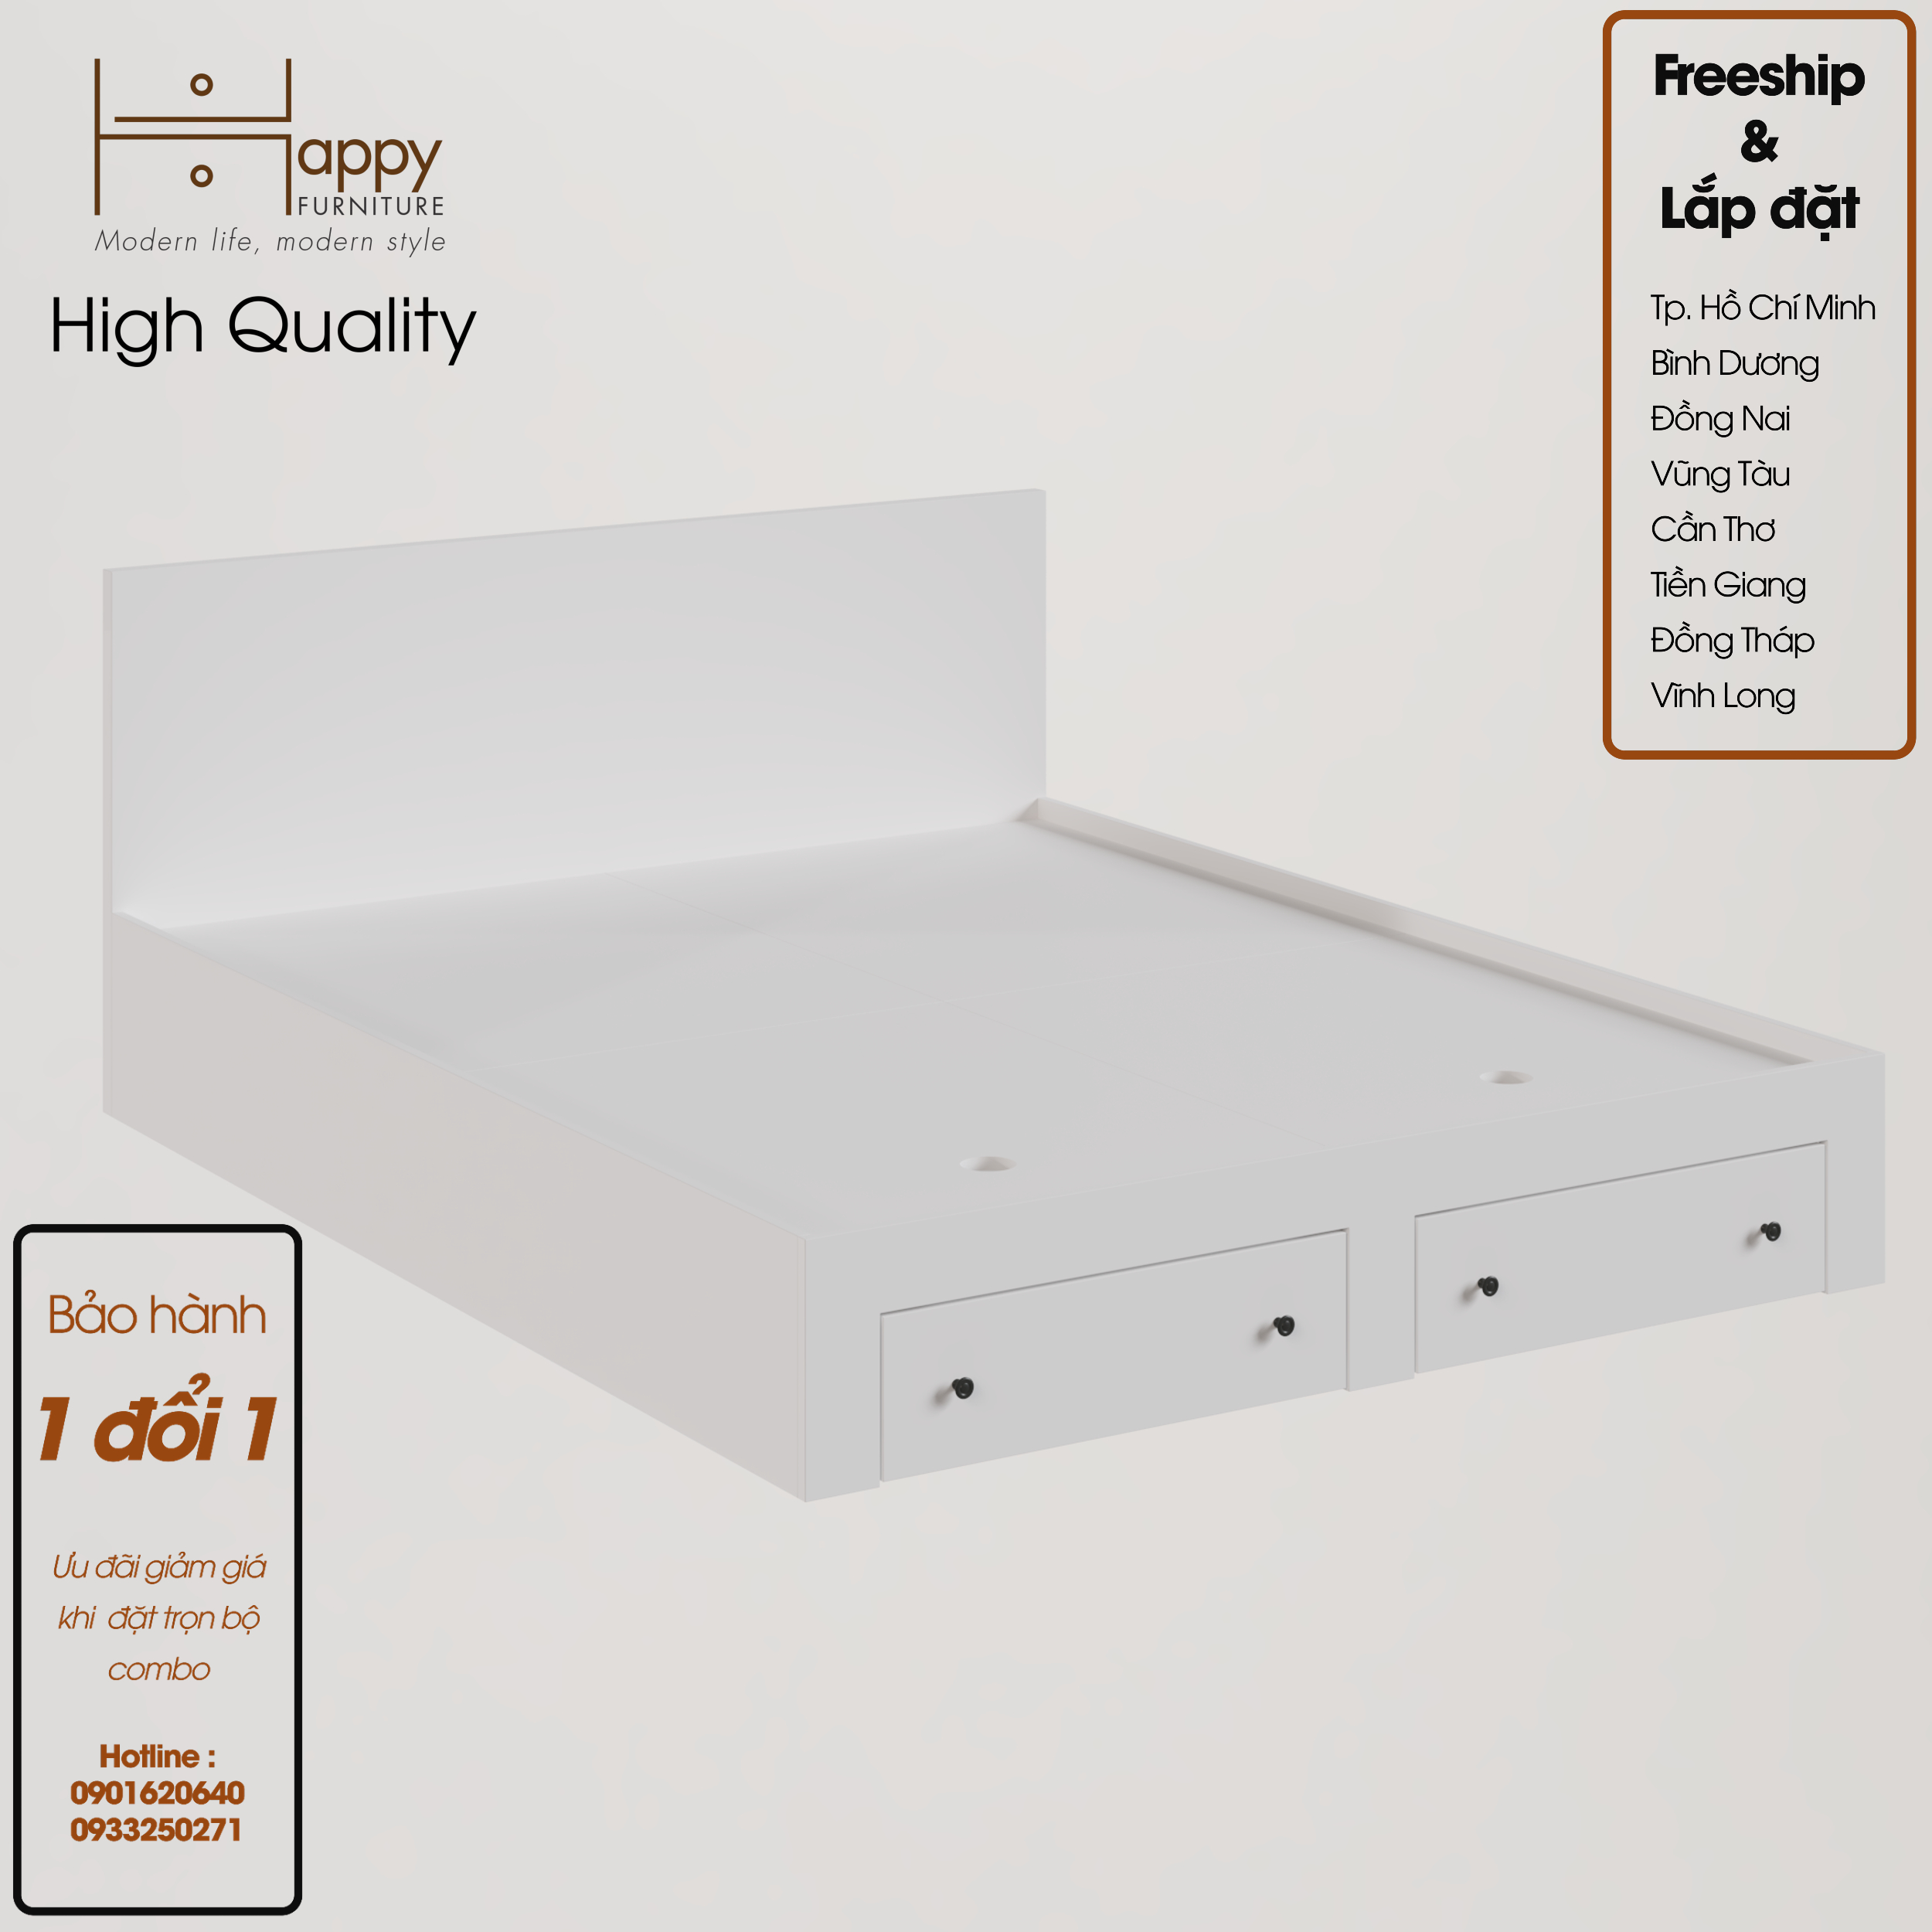 [Happy Home Furniture] CANA, Giường ngủ - 2 ngăn kéo đựng đồ ( chống ẩm cao cấp ), GNG_009, GNG_010, GNG_011, GNG_012